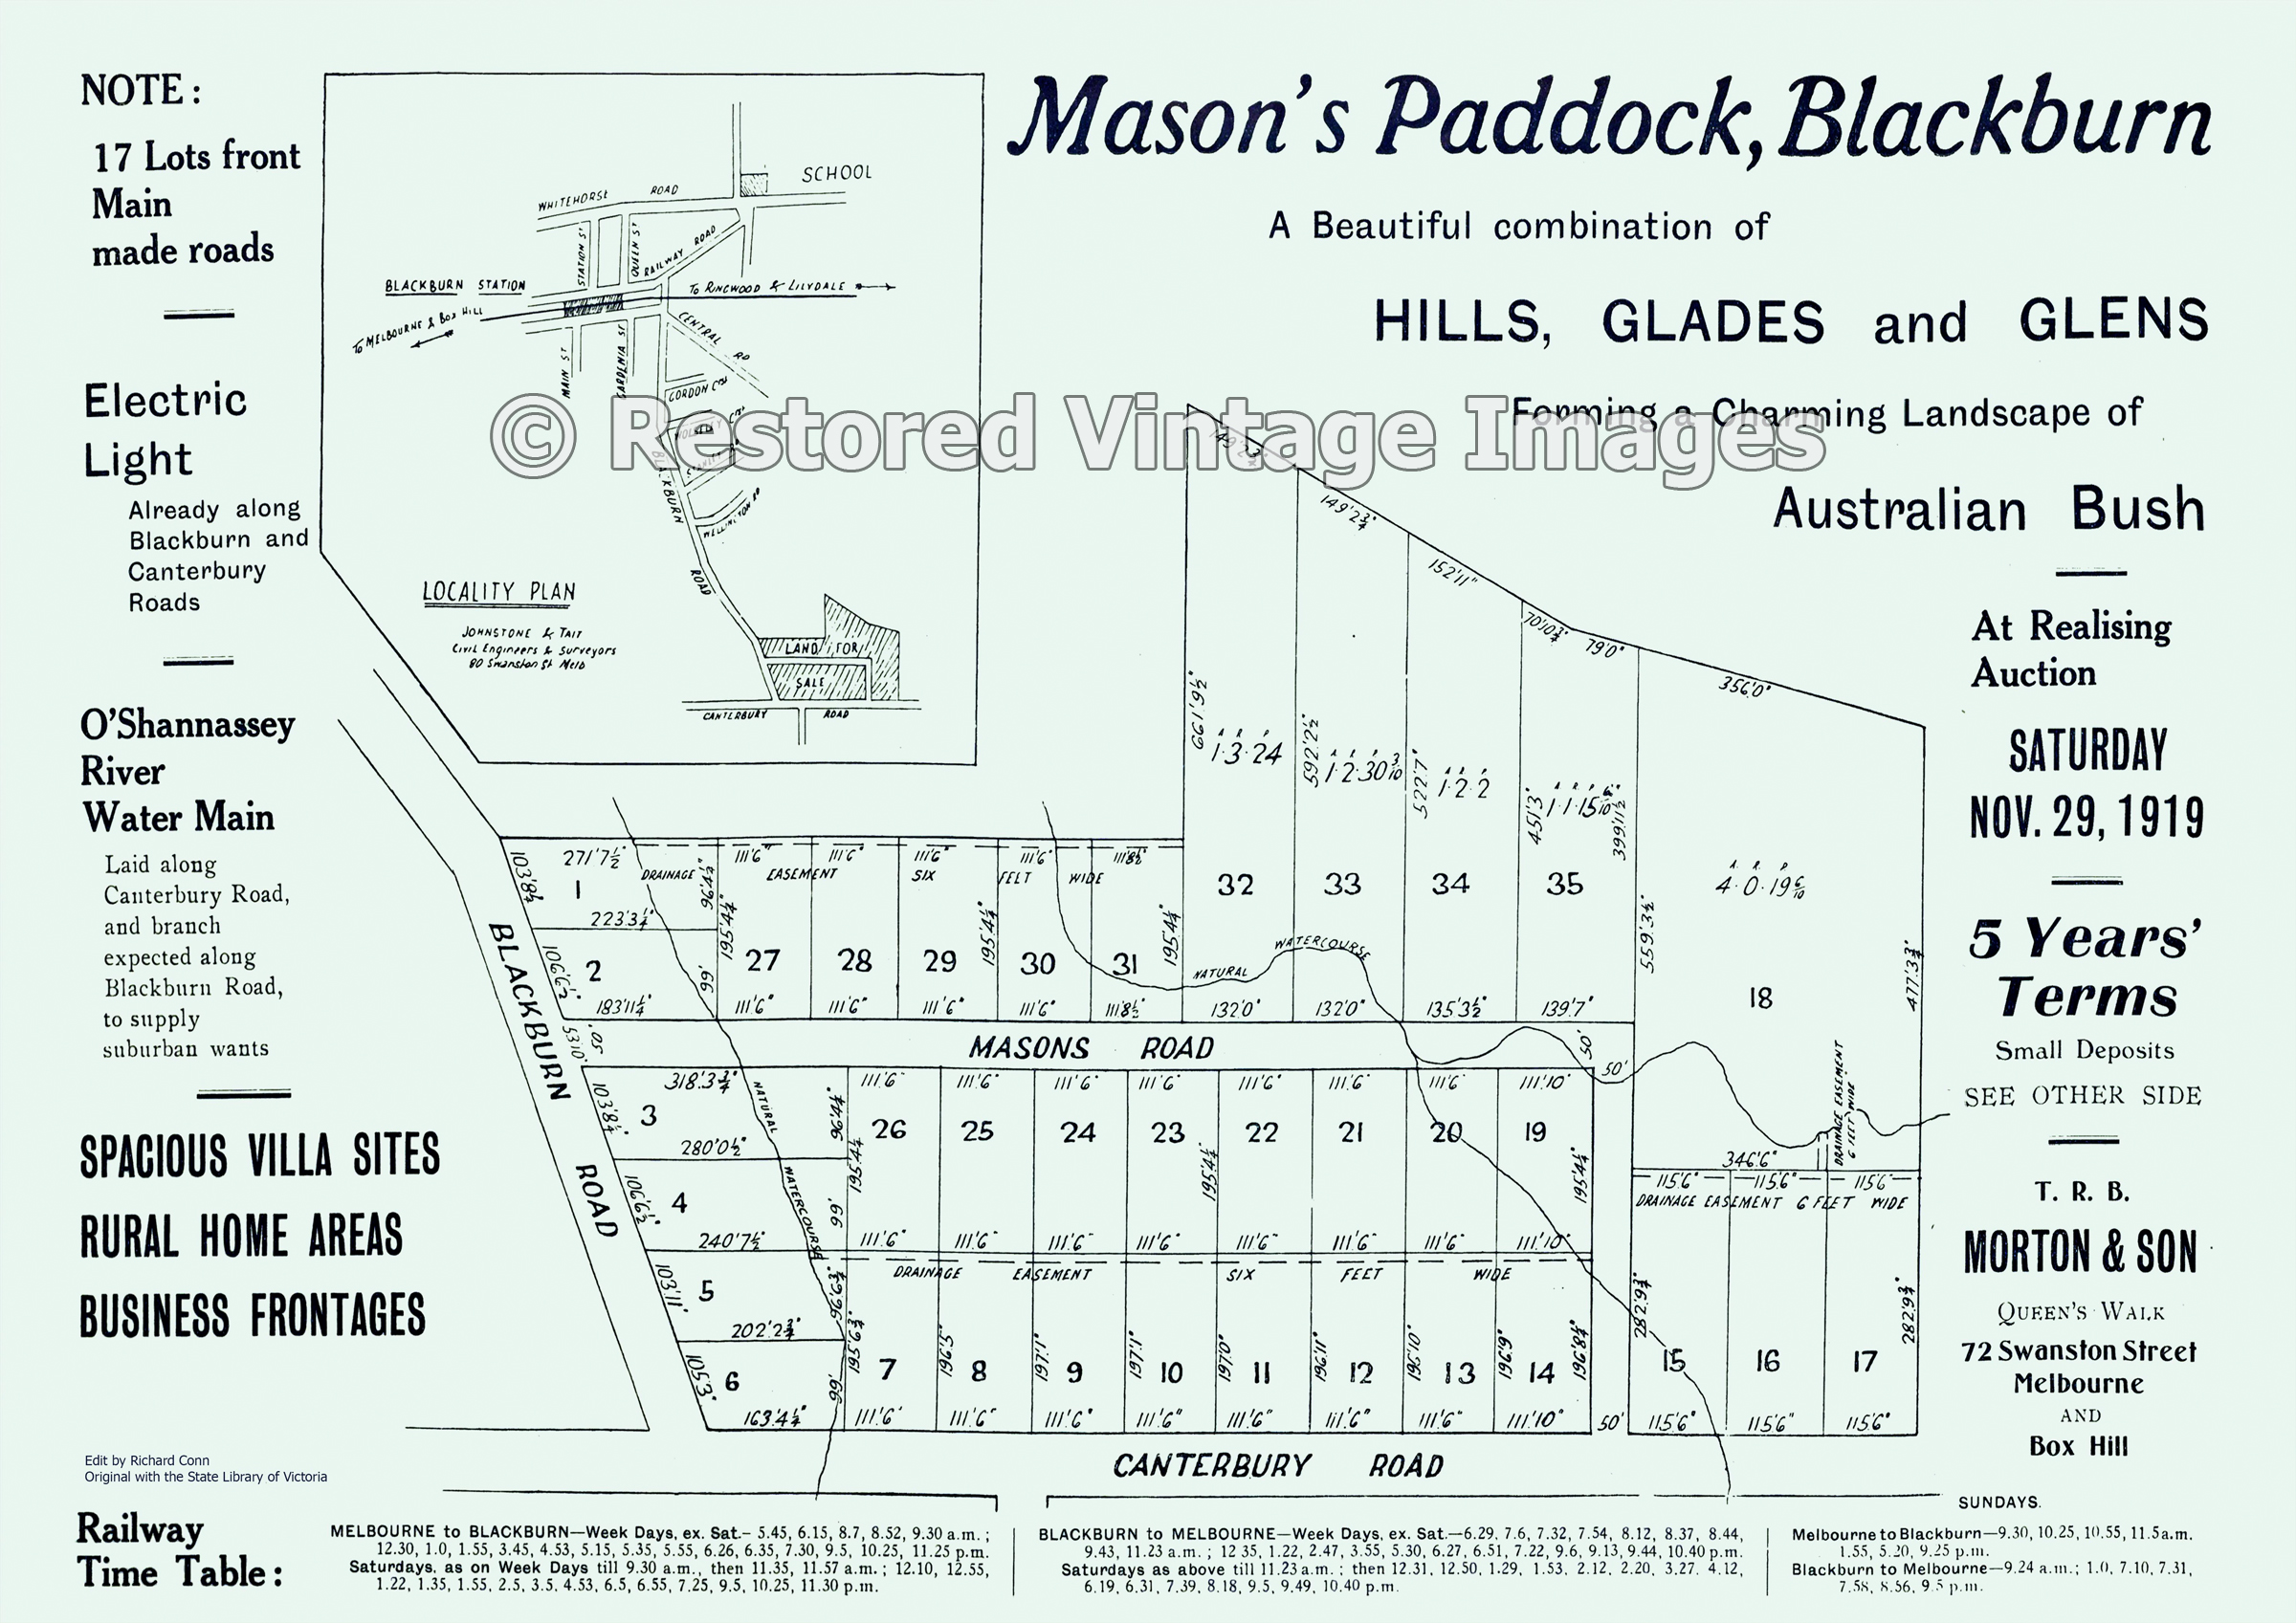 Mason’s Paddock 29th November 1919 – Blackburn